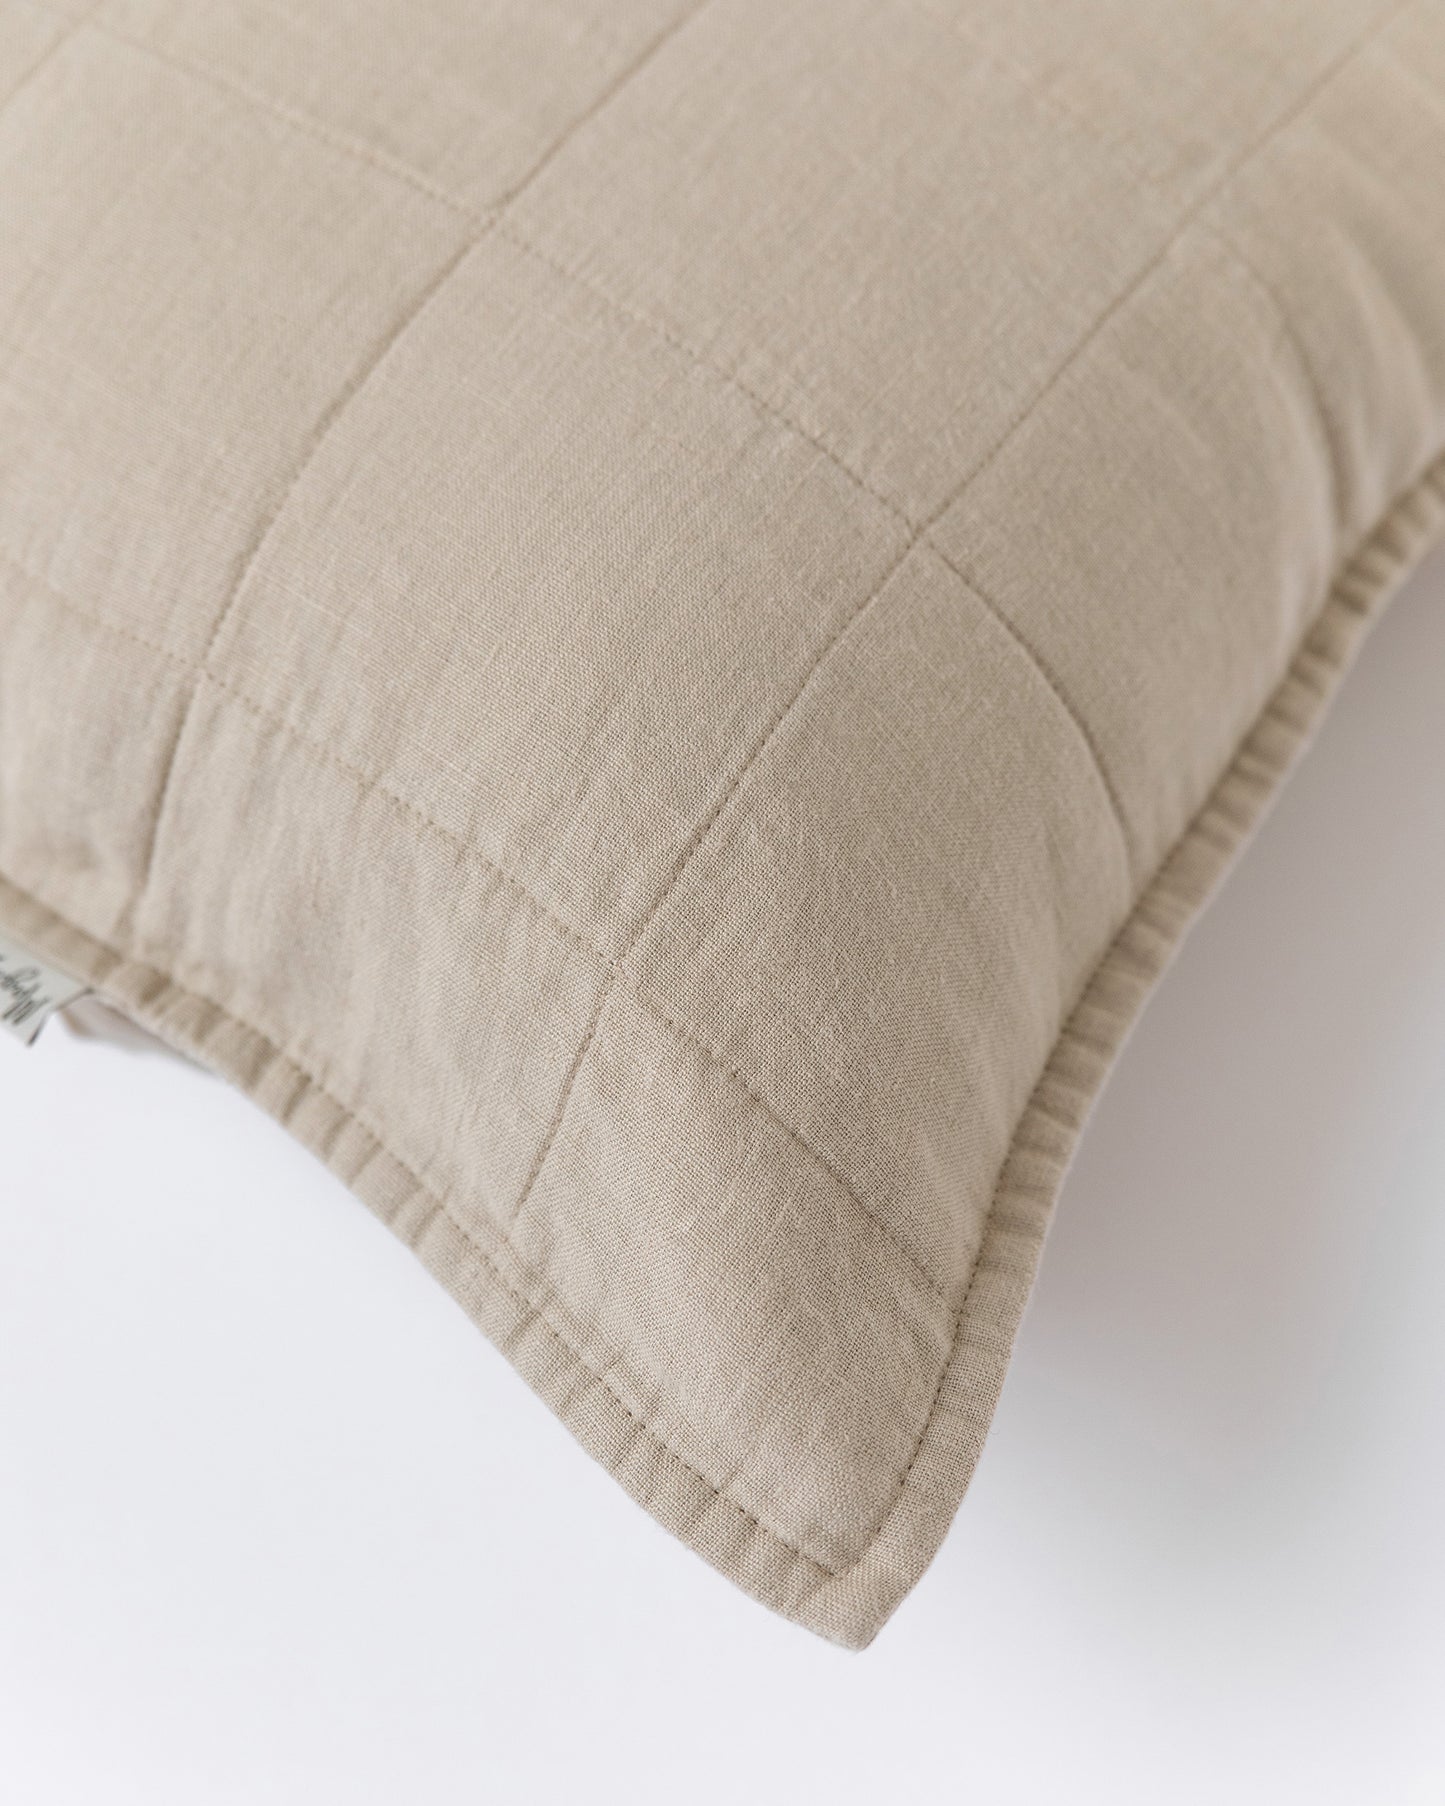 Quilted linen pillowcase set of 2 - MagicLinen